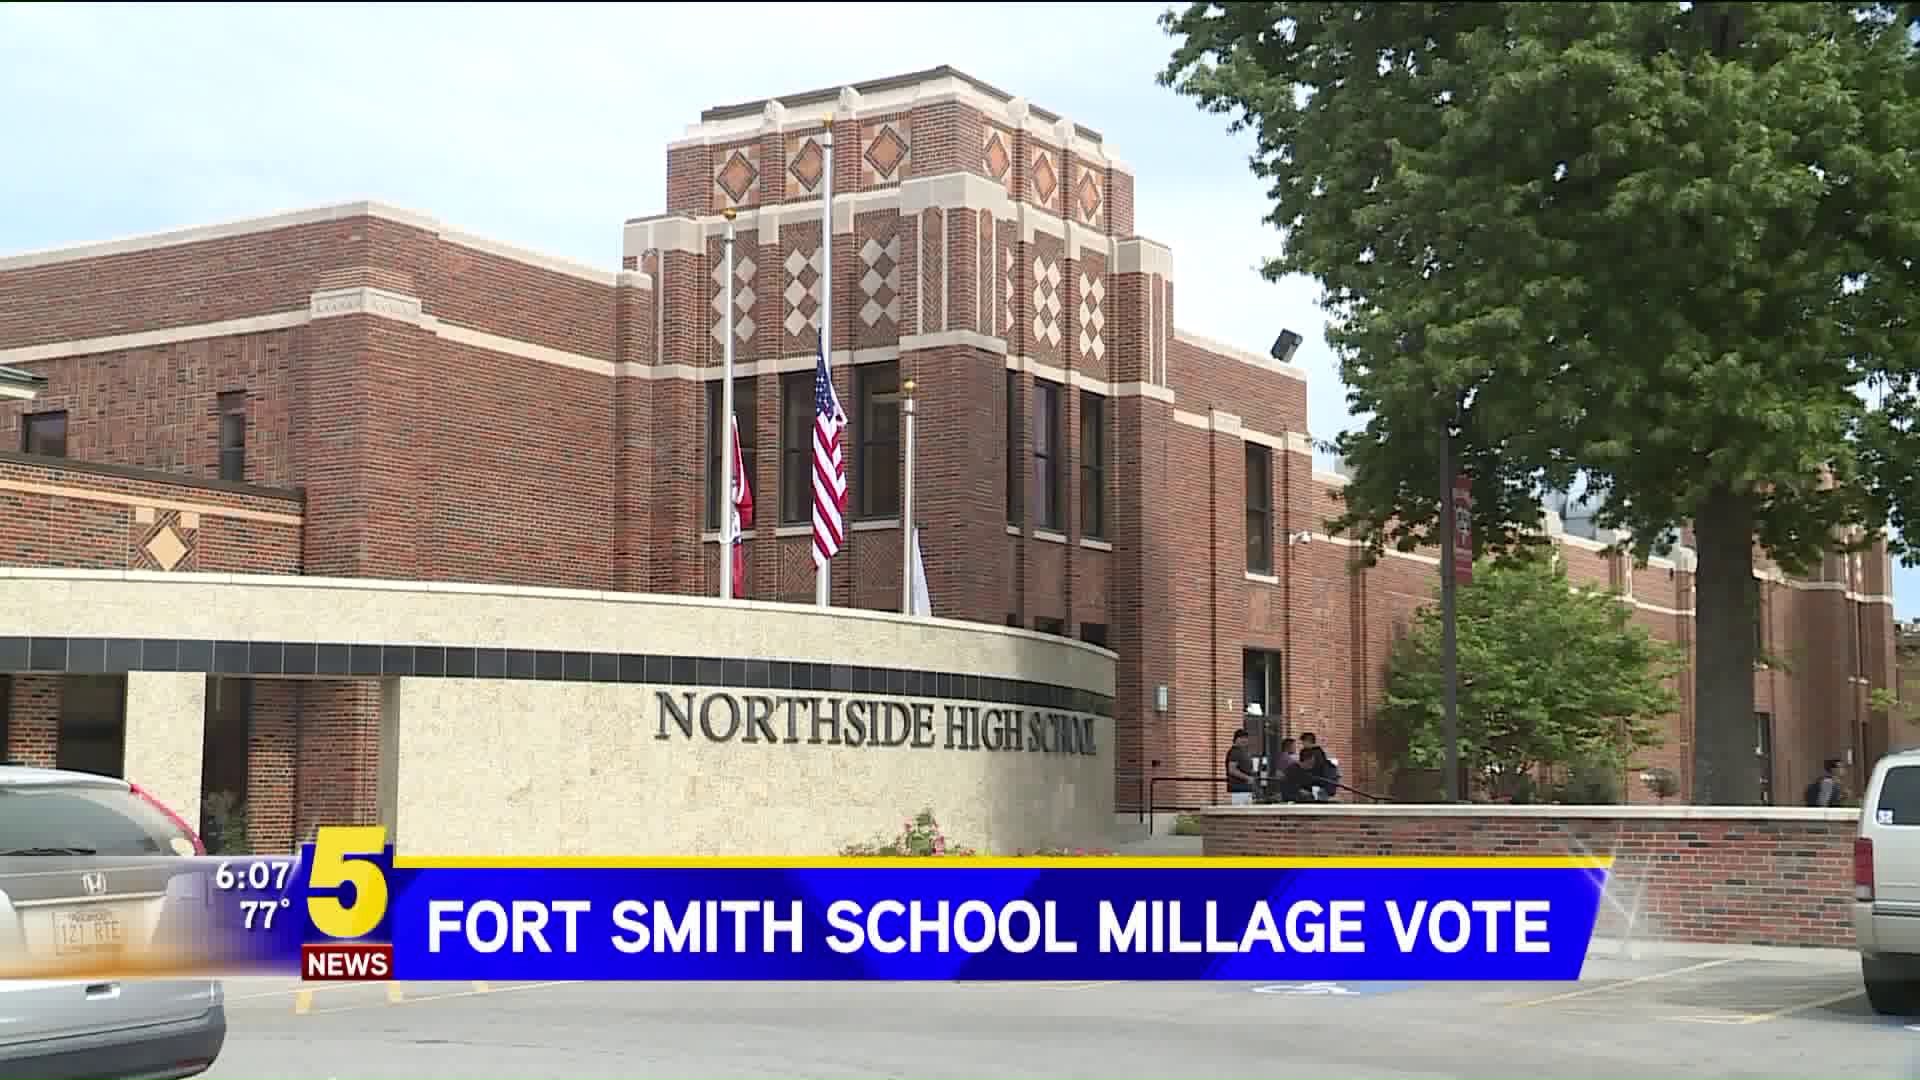 Fort Smith School Millage Vote